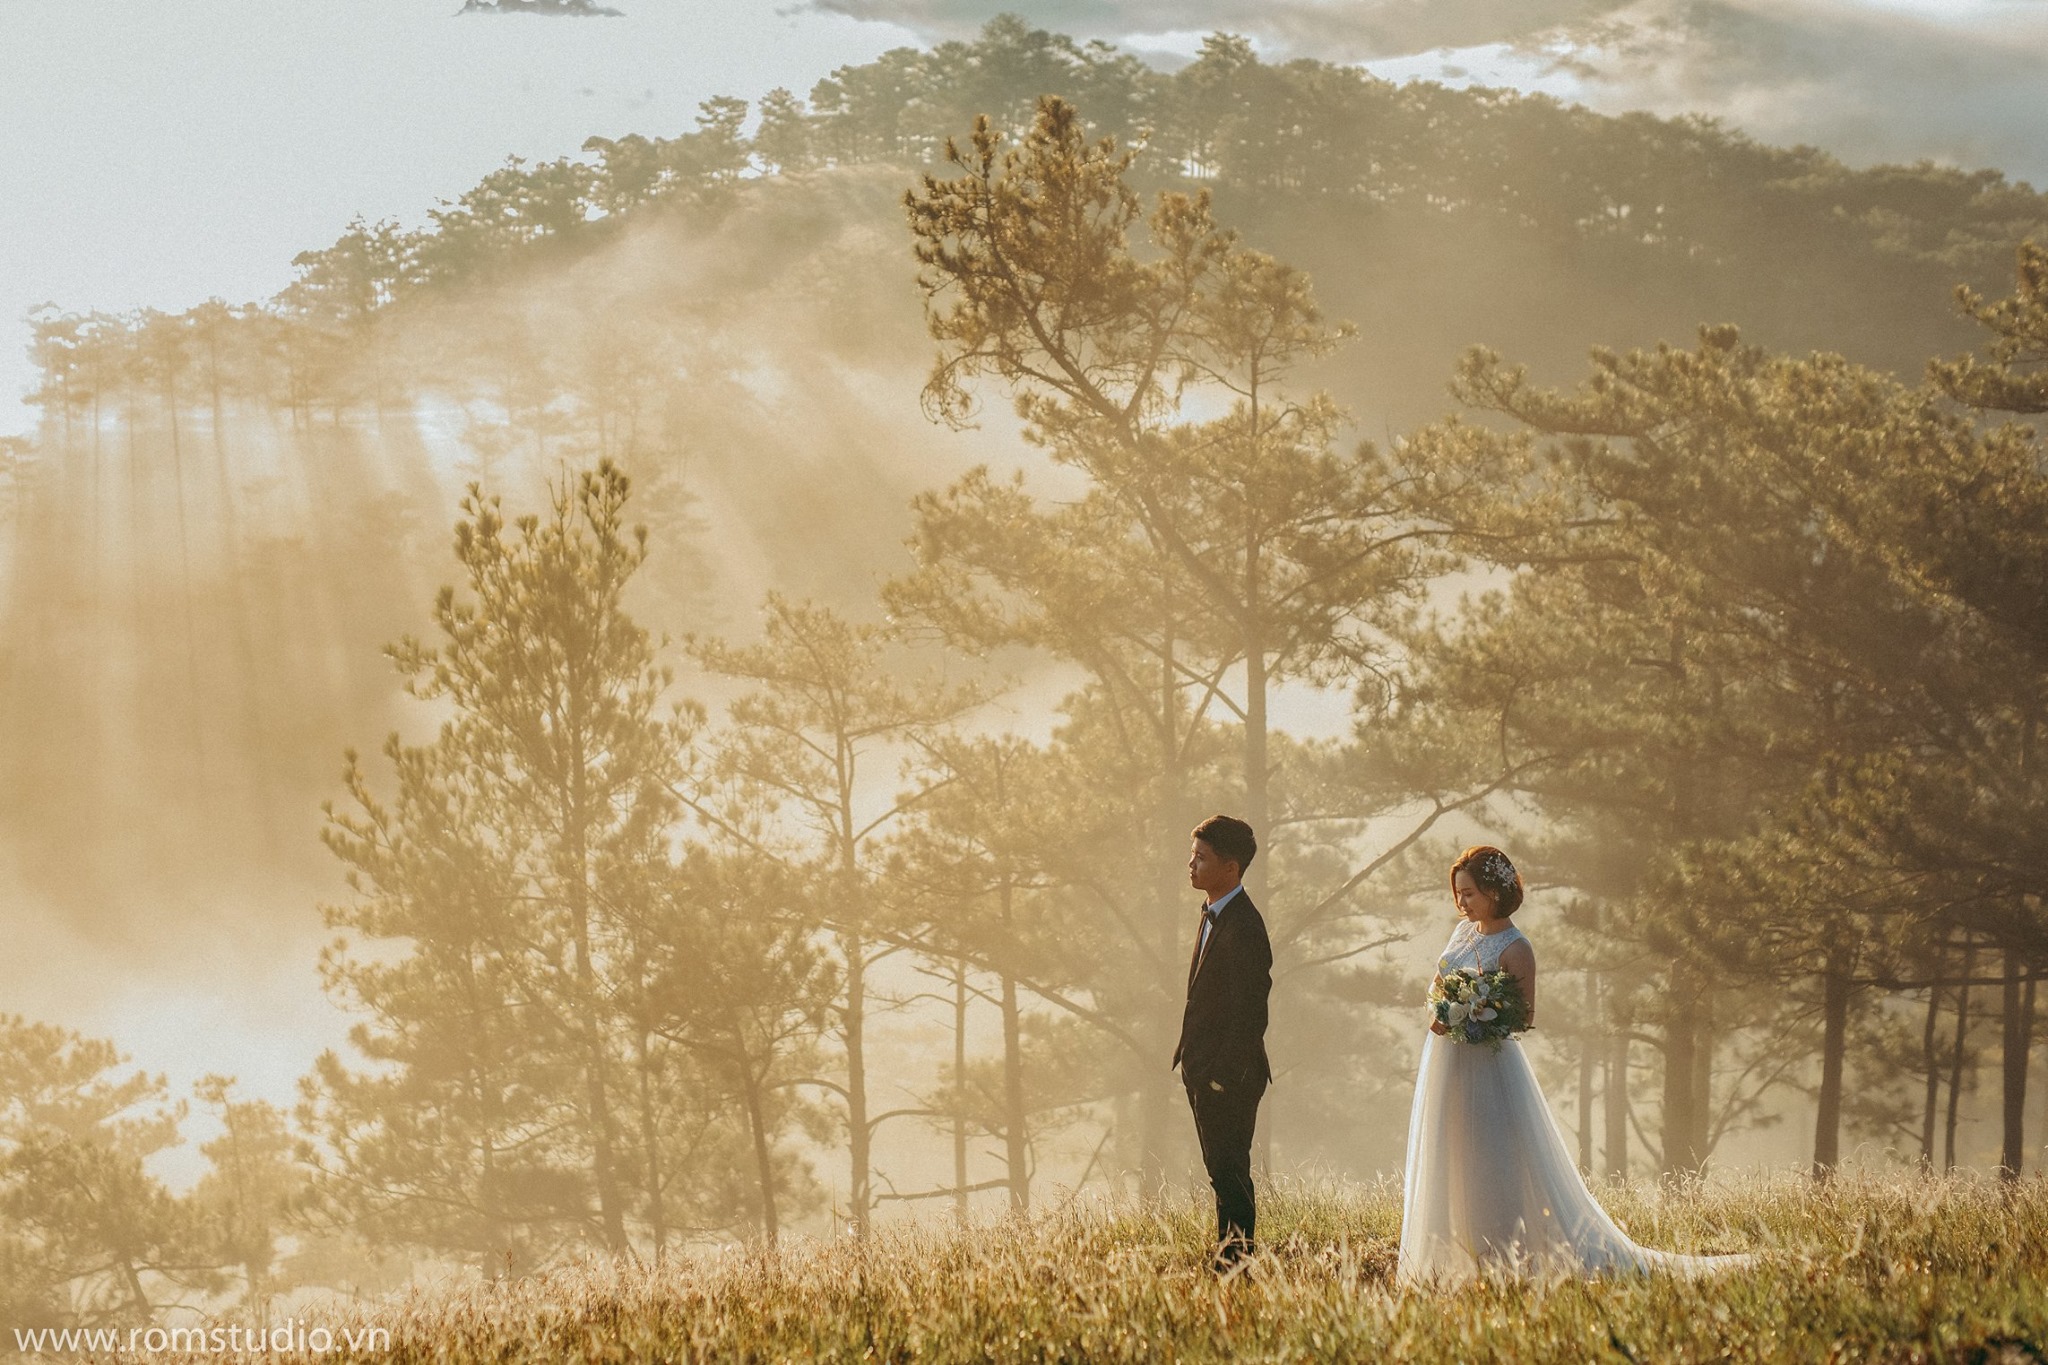 Xếp hạng 10 Studio chụp ảnh cưới đẹp nhất Đà Lạt - Ròm Studio